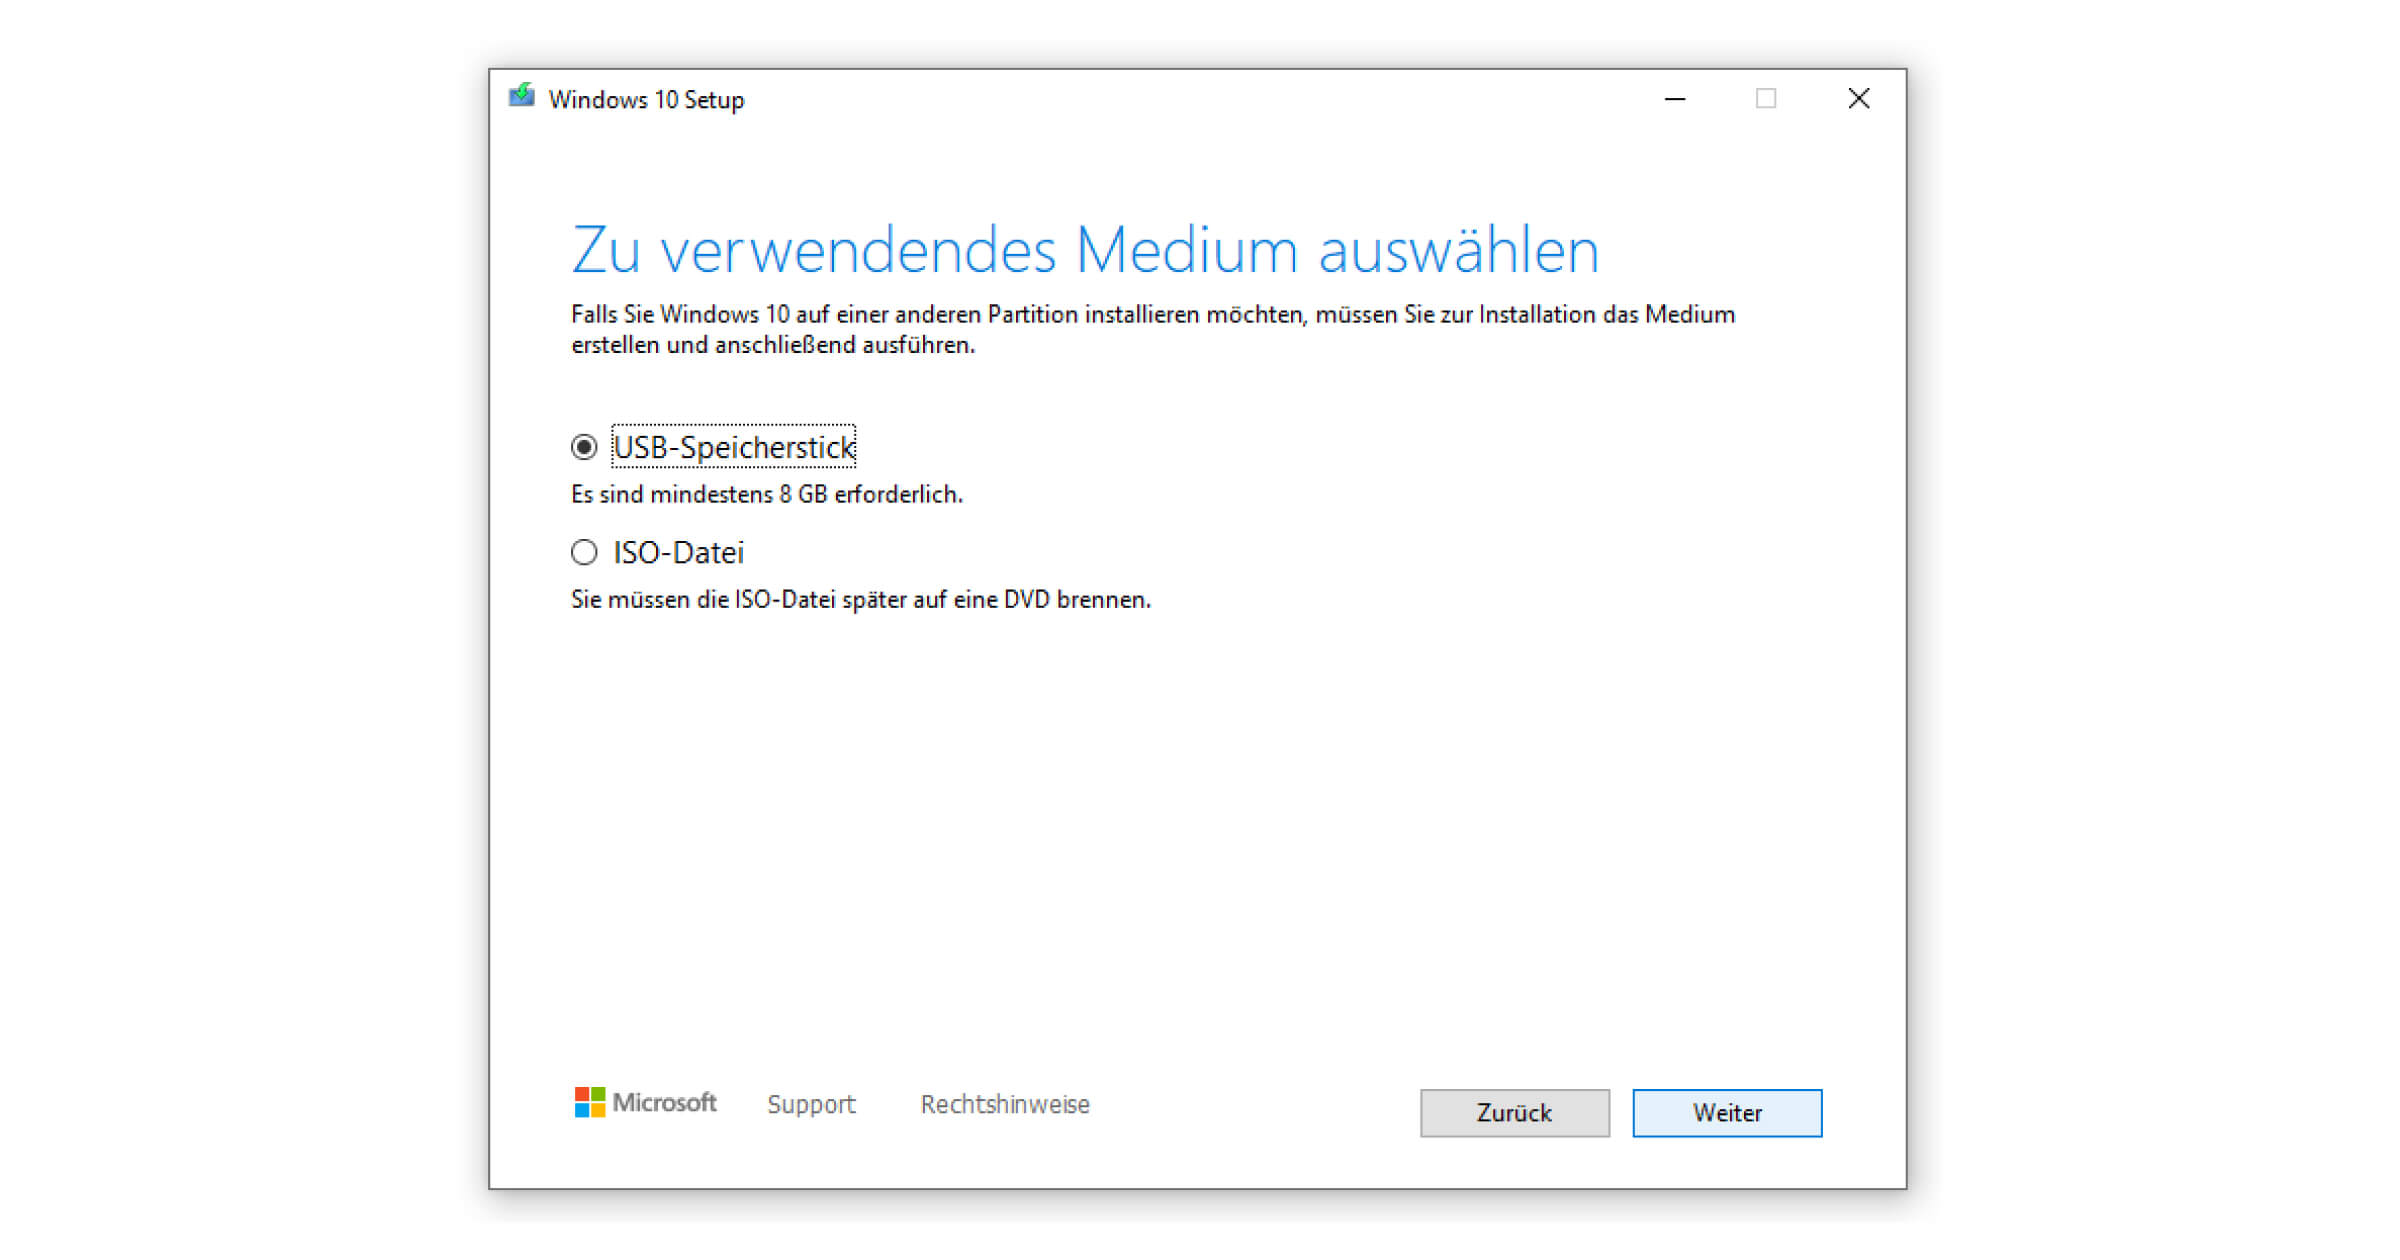 Für die ISO-Datei von Windows 10 benötigst du einen DVD-Brenner